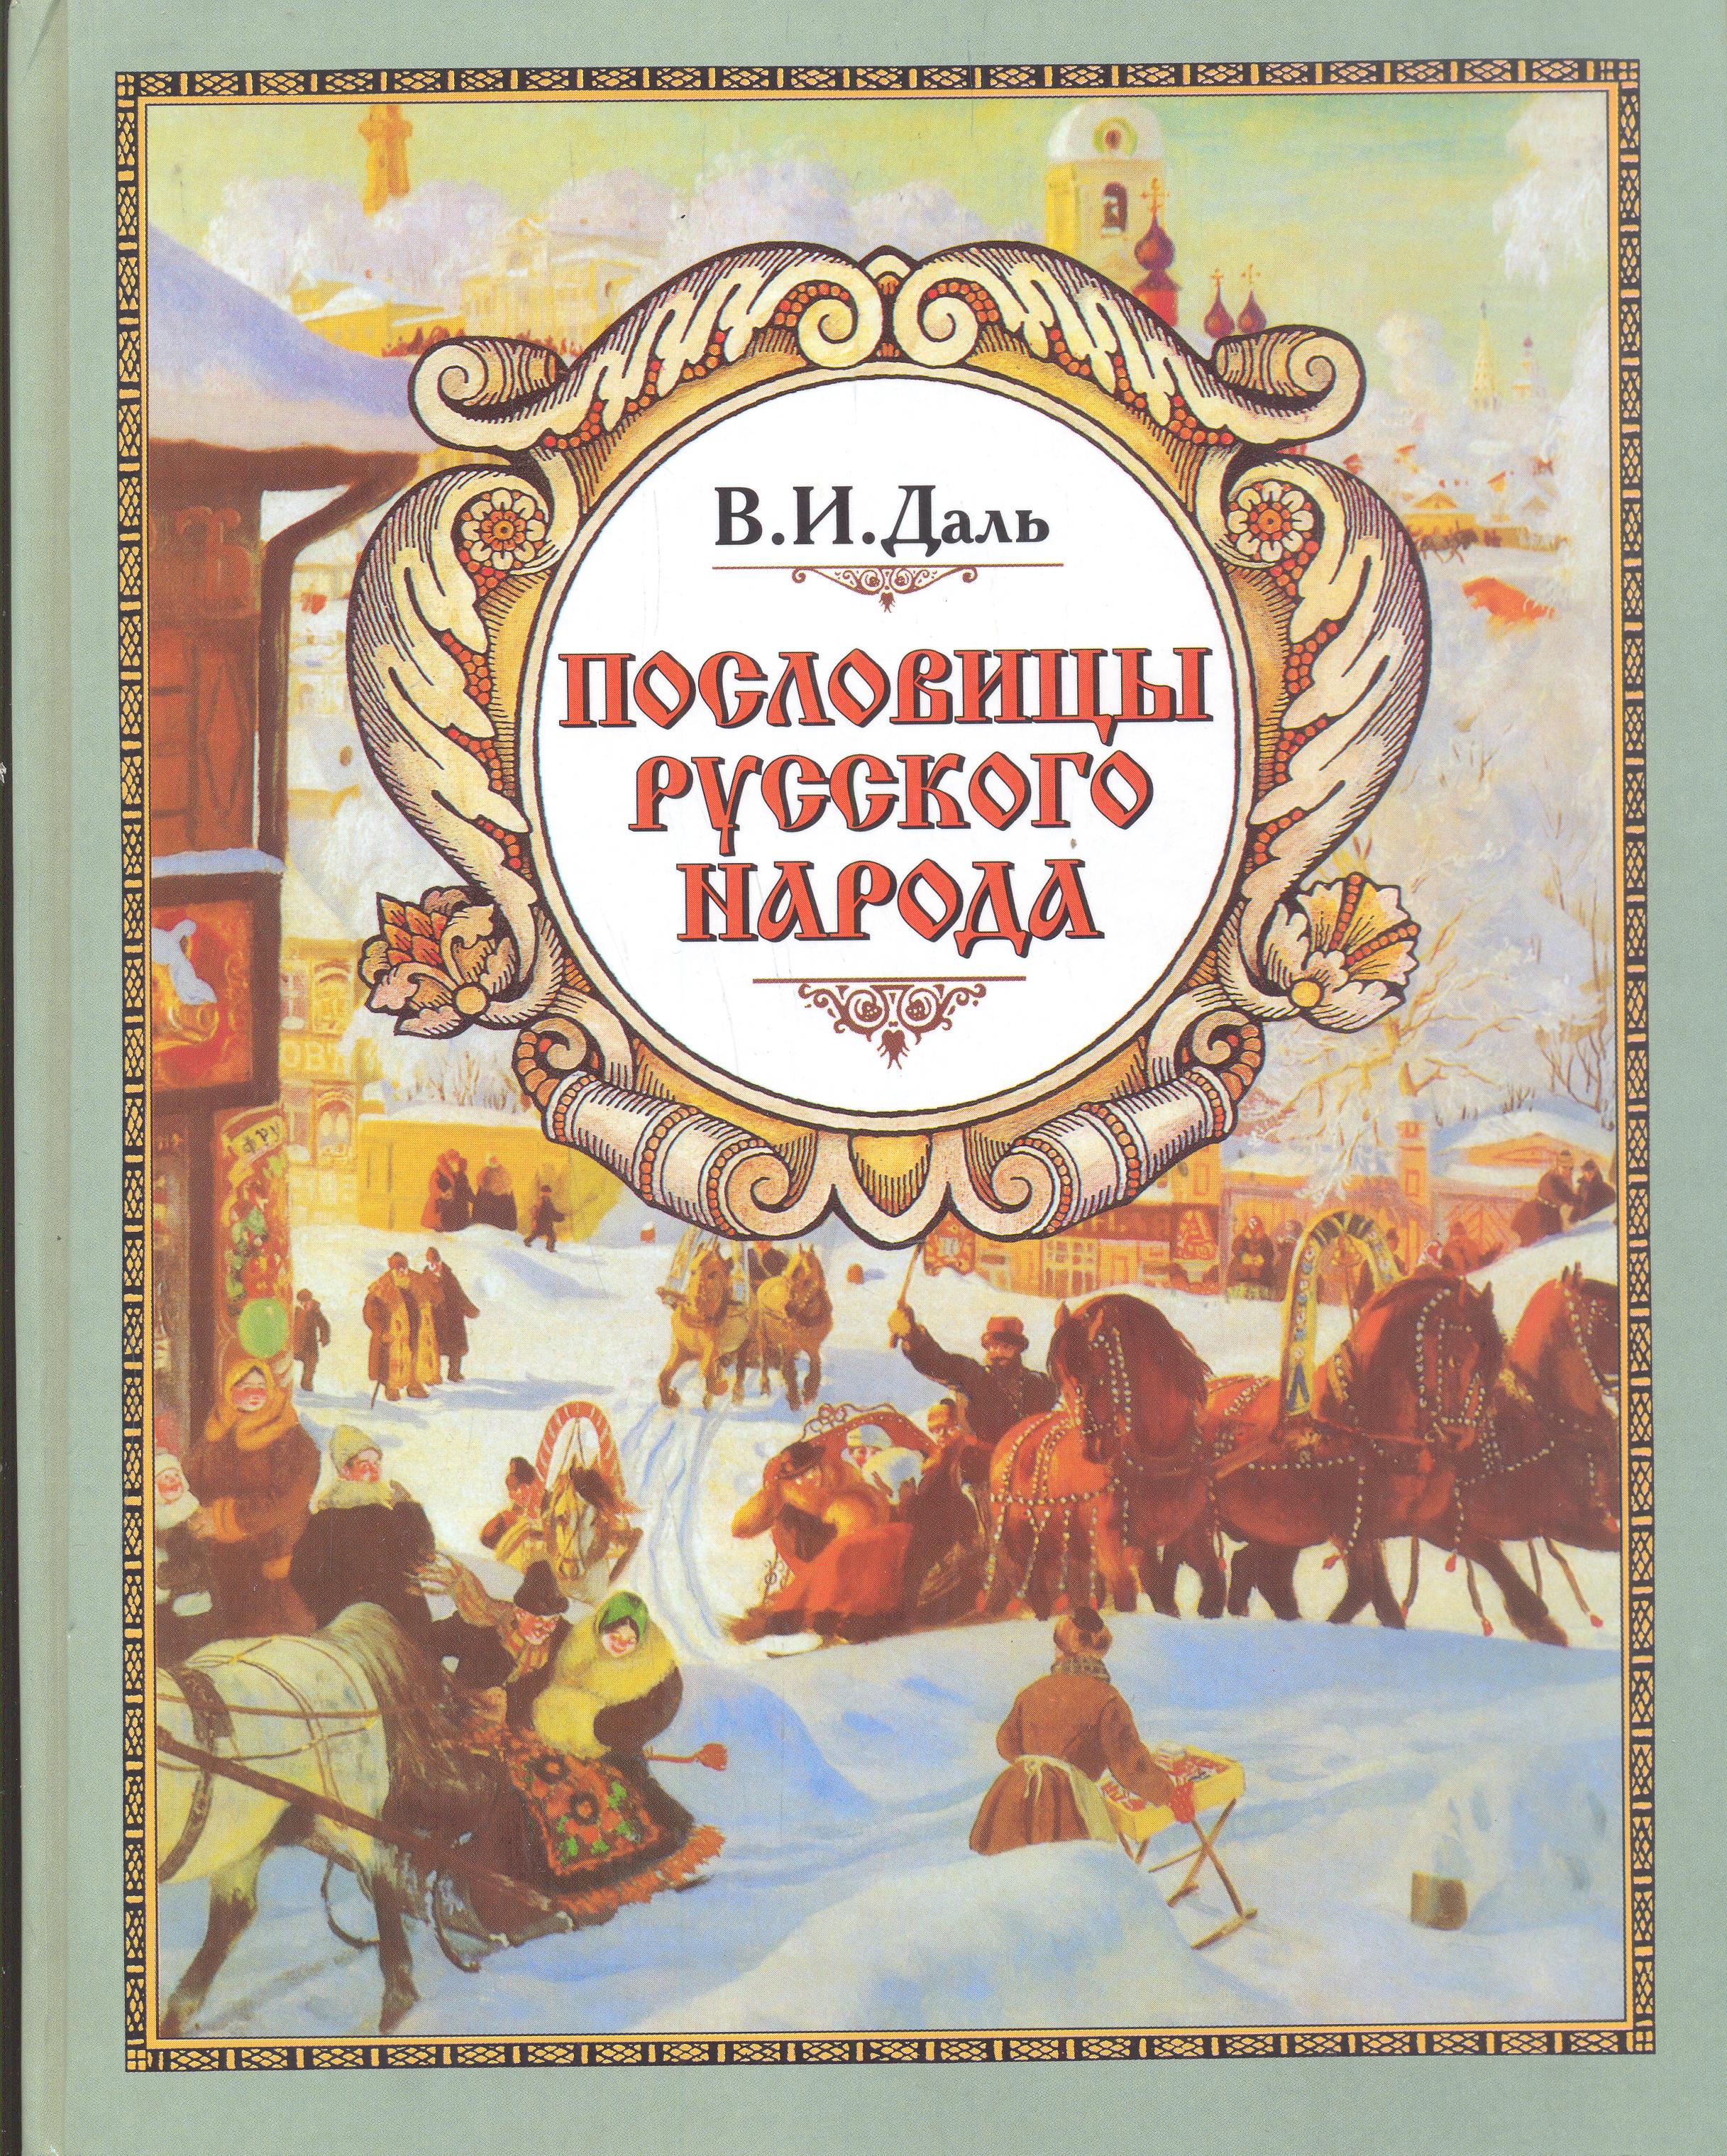 Читать «все лучшие сказки русских писателей (сборник)» онлайн